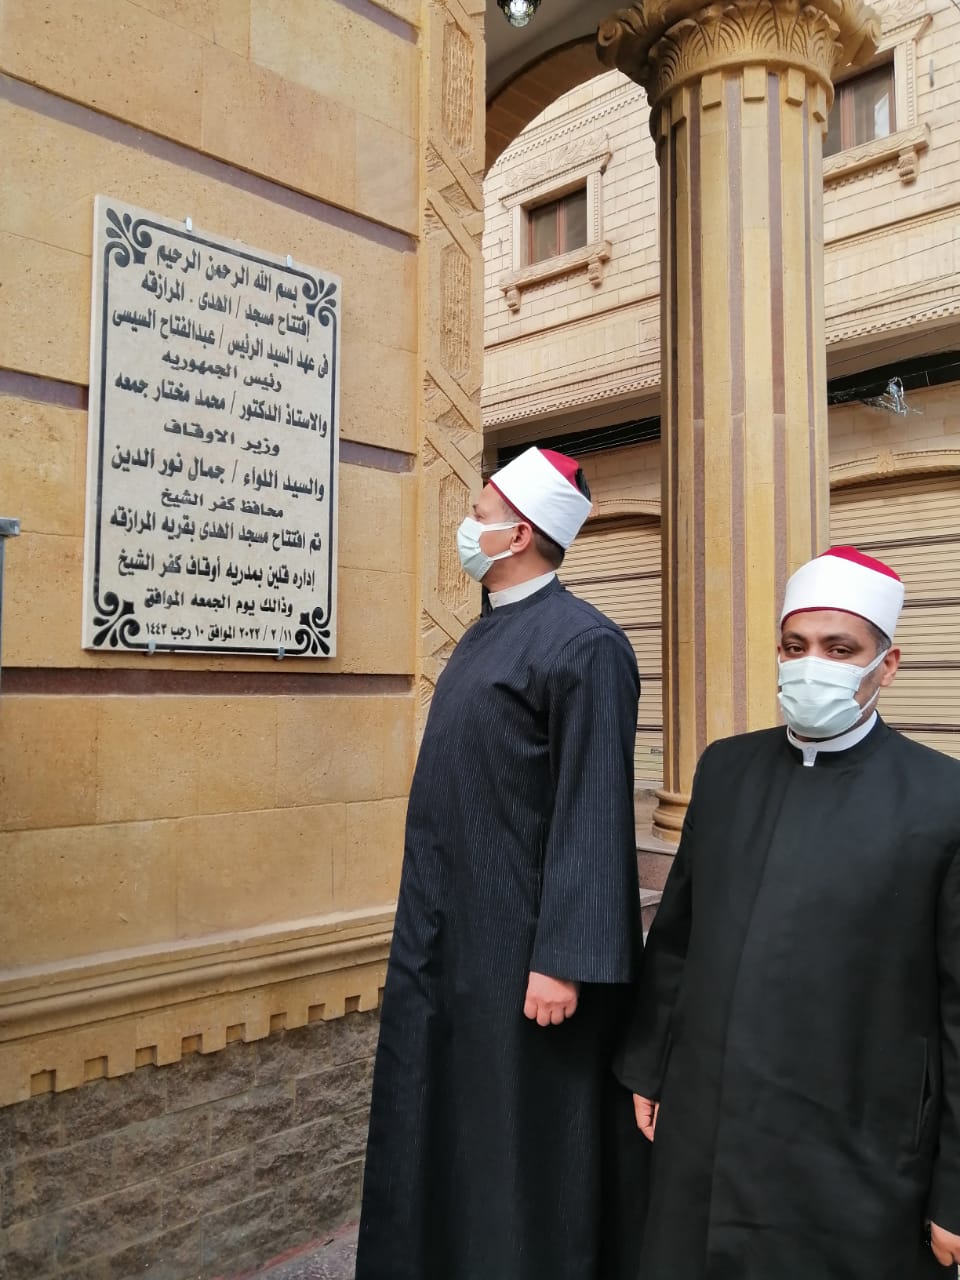 اليوم الجمعة افتتاح مسجد بكفر الشيخ